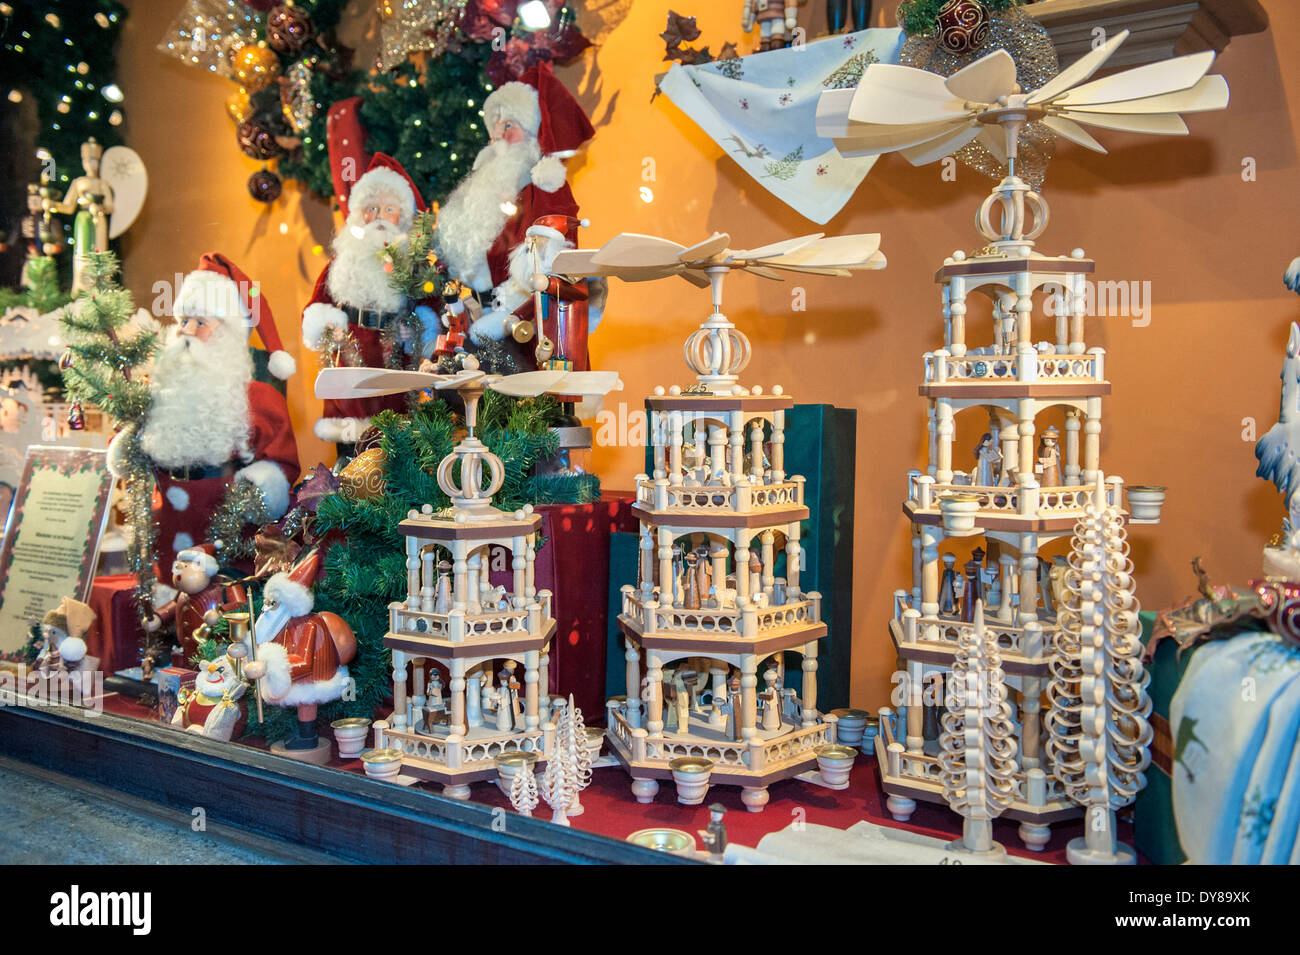 Des décorations de Noël à Kathe Wohlfahrt afficher la fenêtre en bois, pyramide, marché de Noël, Rudesheim, Allemagne Banque D'Images